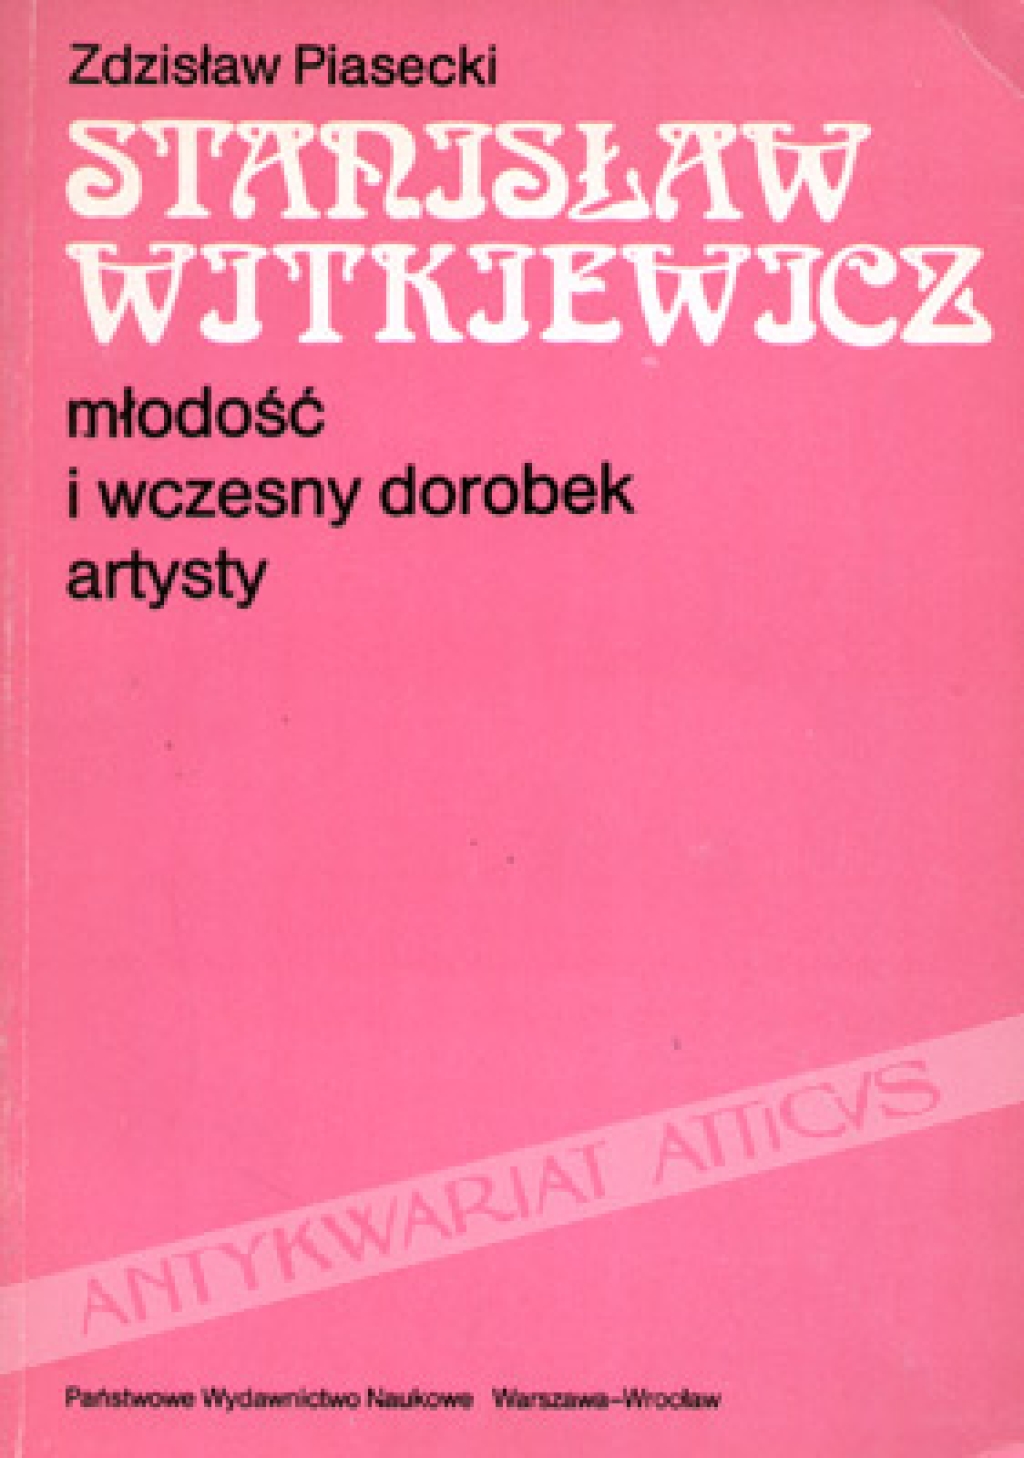 Stanisław Witkiewicz. Młodość i wczesny dorobek artysty